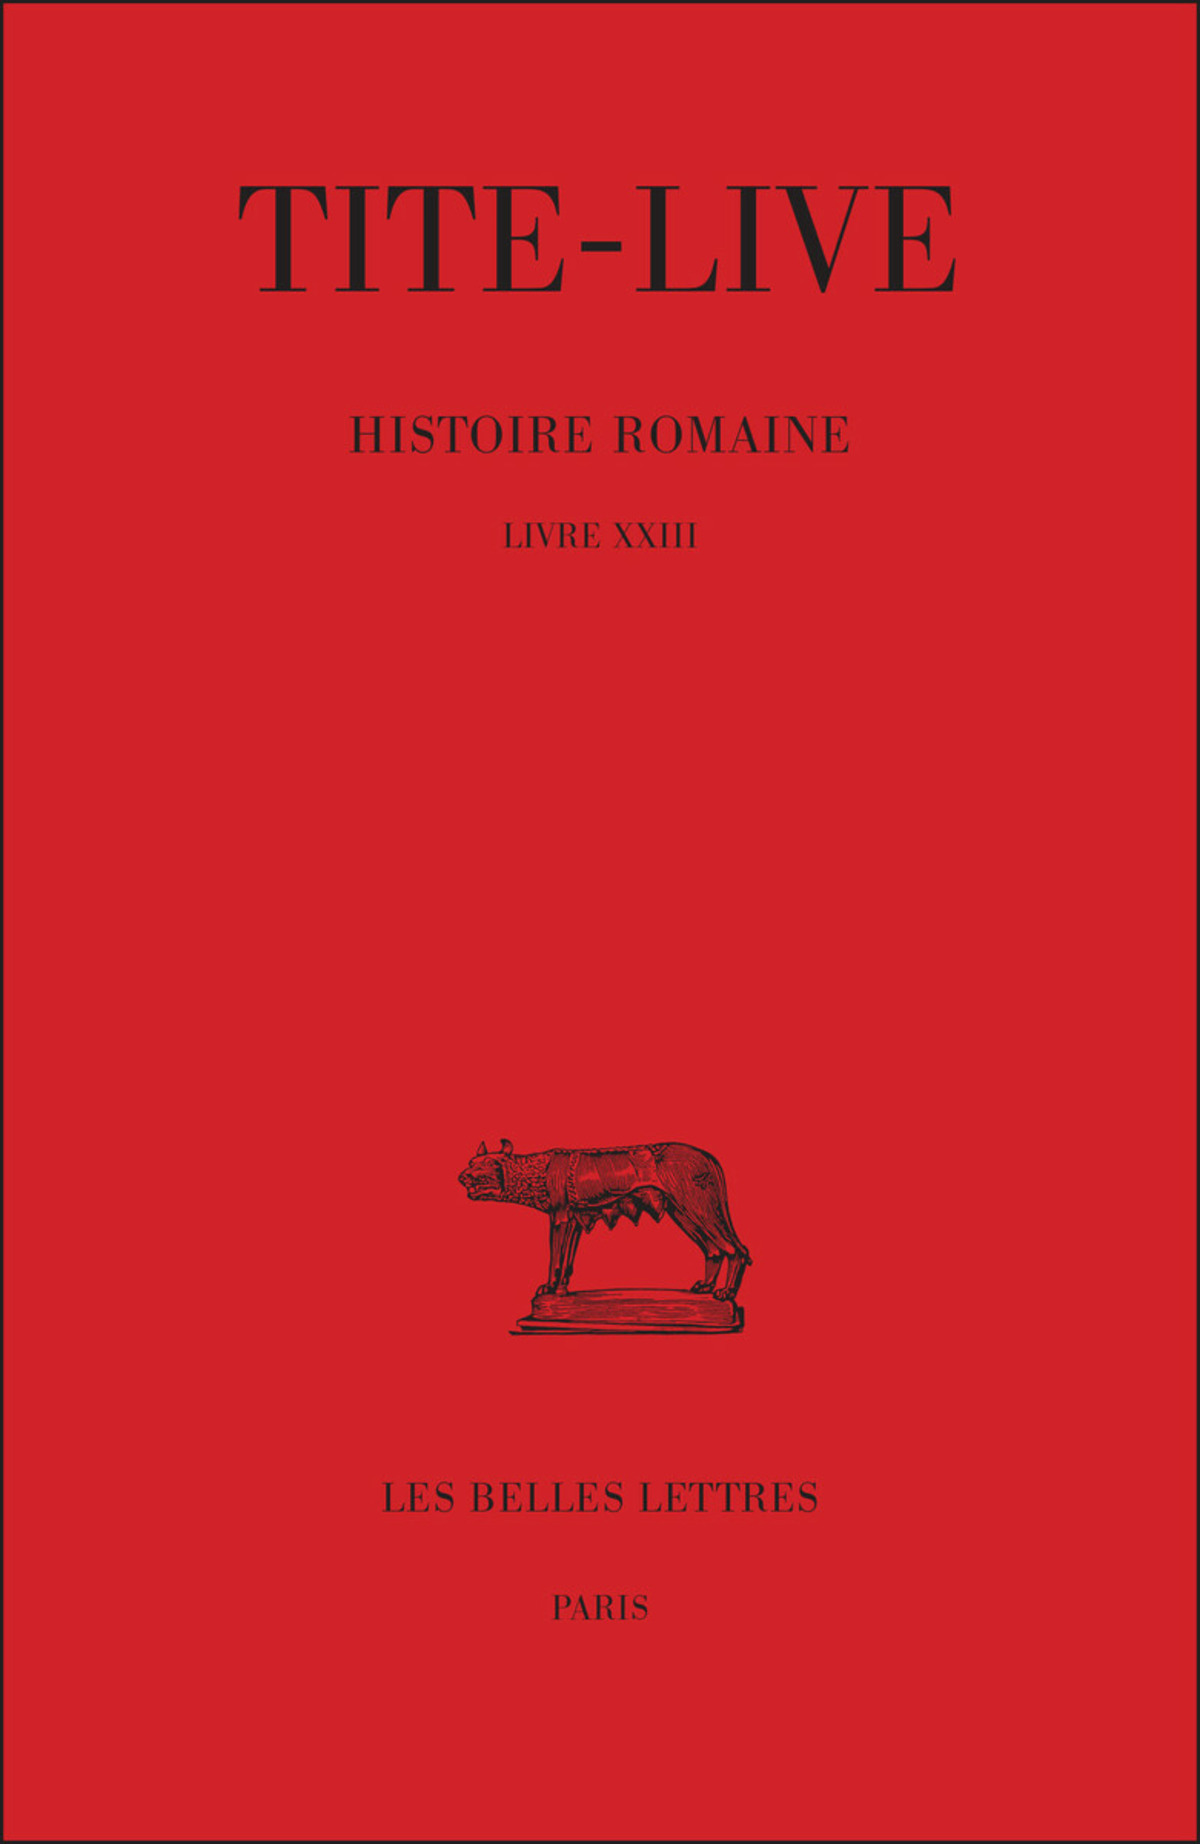 Histoire romaine. Tome XIII : Livre XXIII